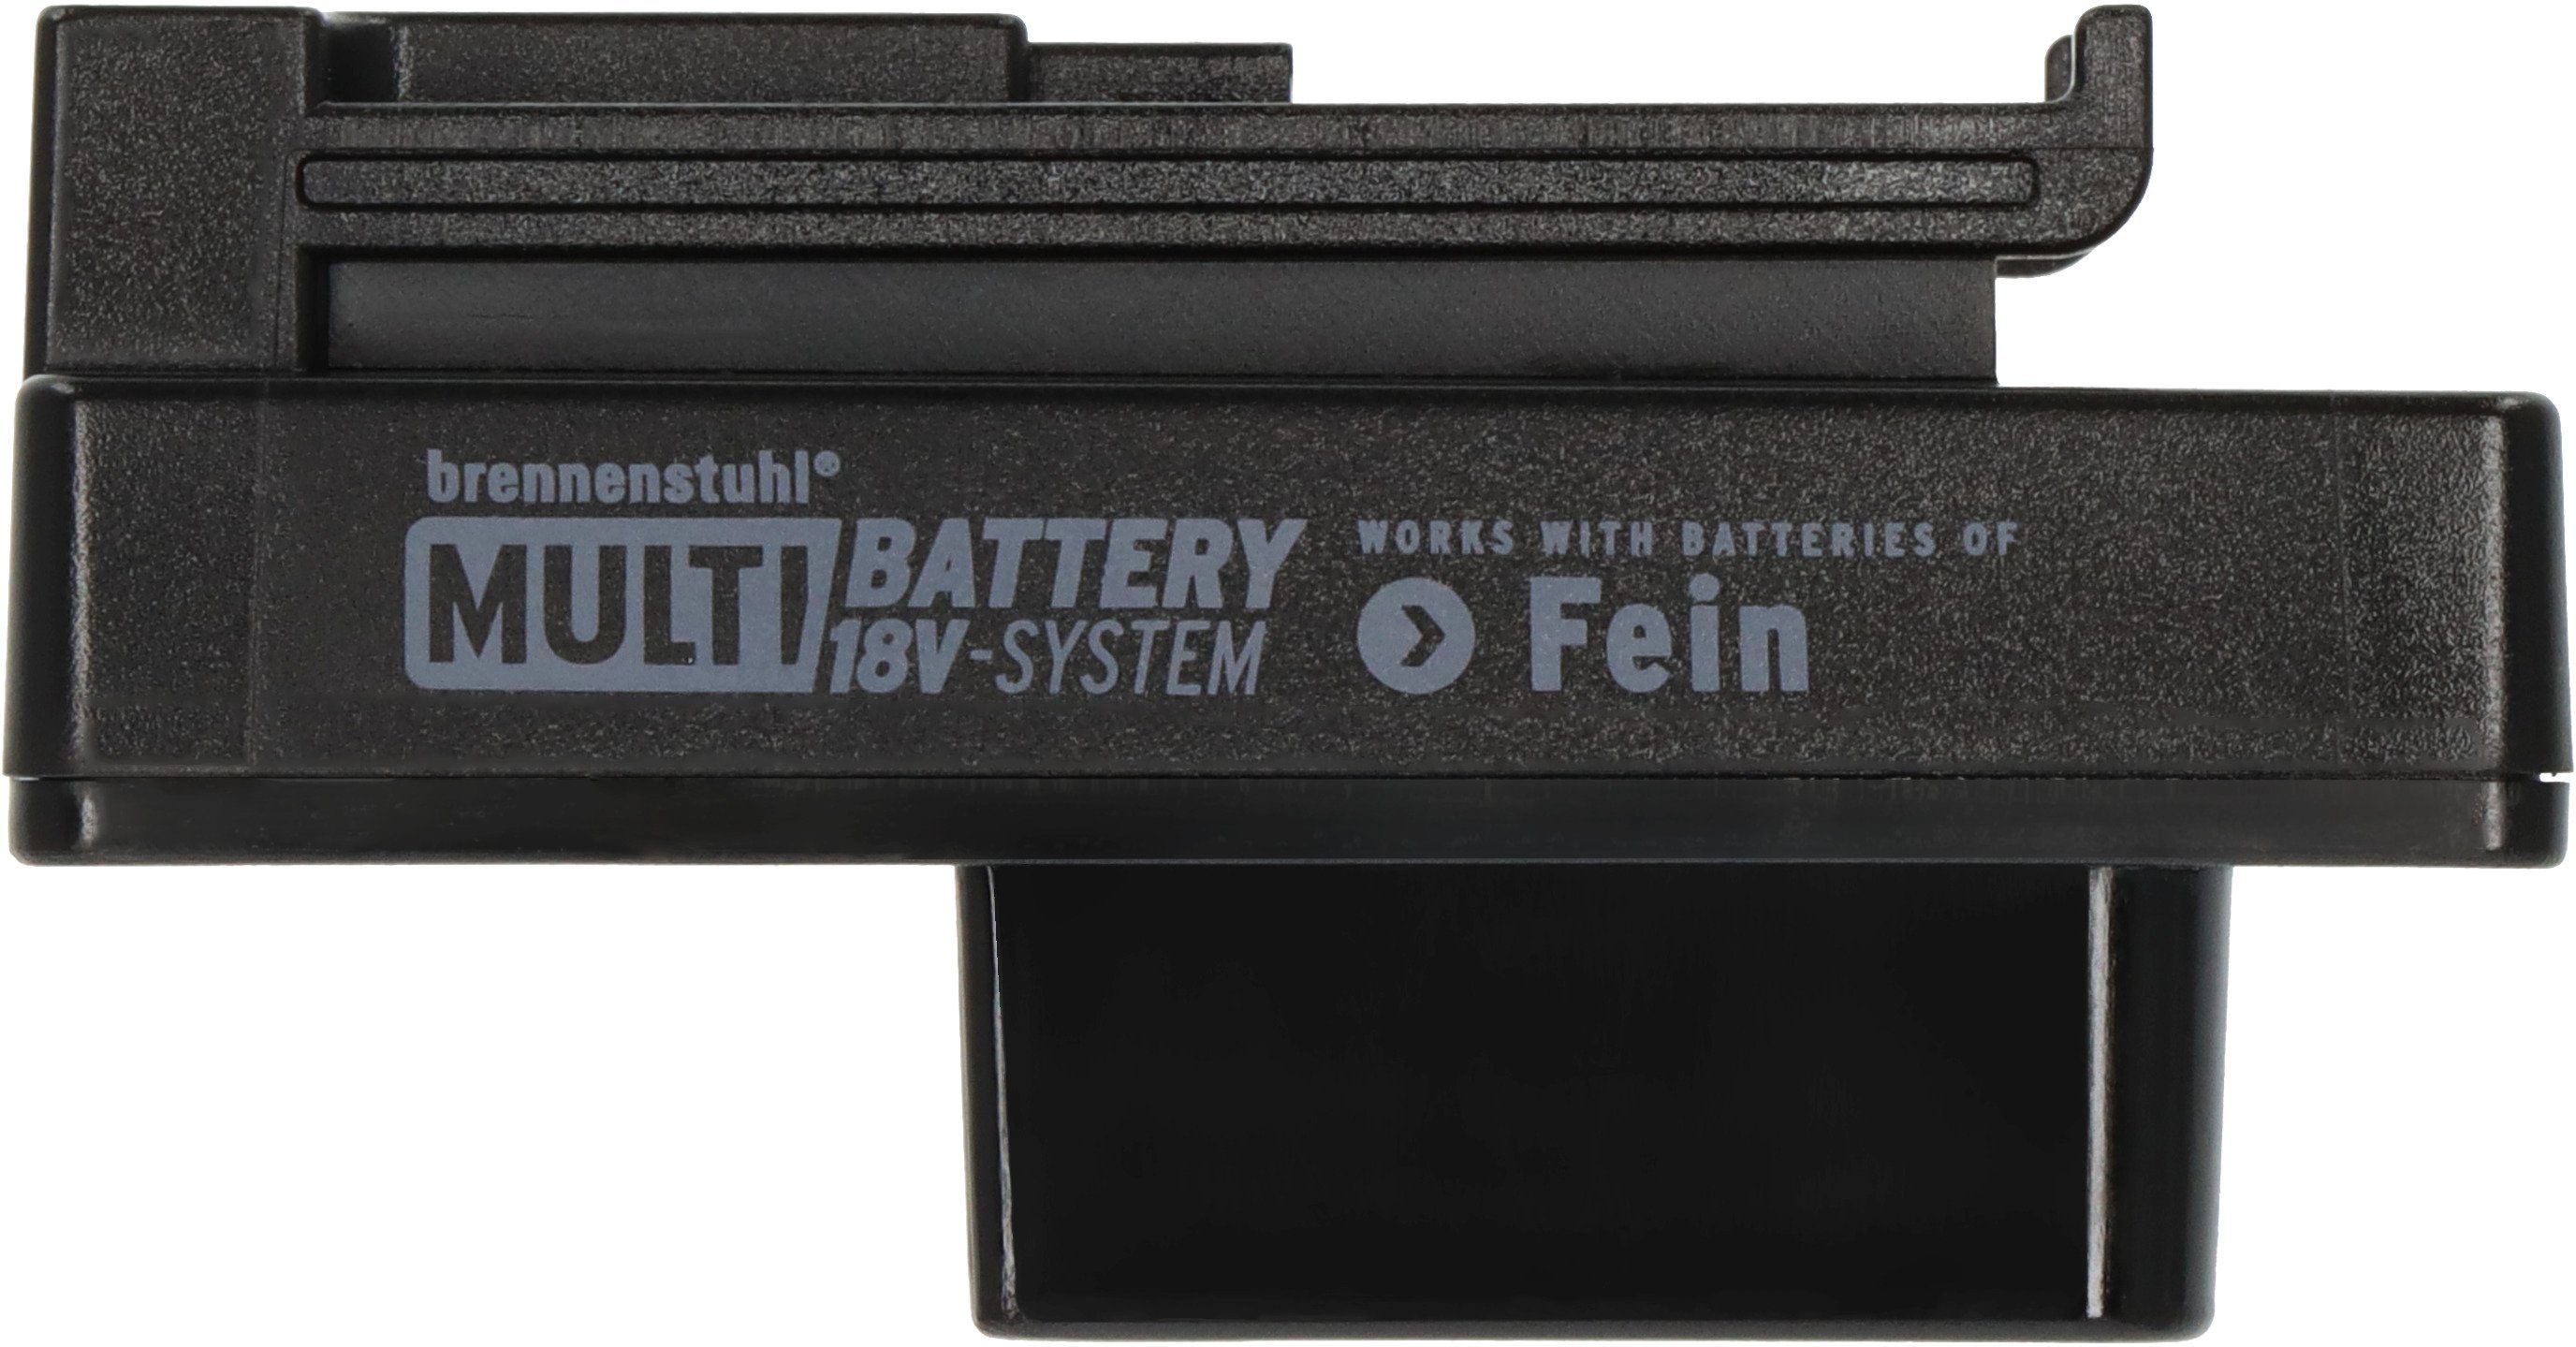 LED Fein für Brennenstuhl Multi 18V Battery Adapter, Baustrahler System